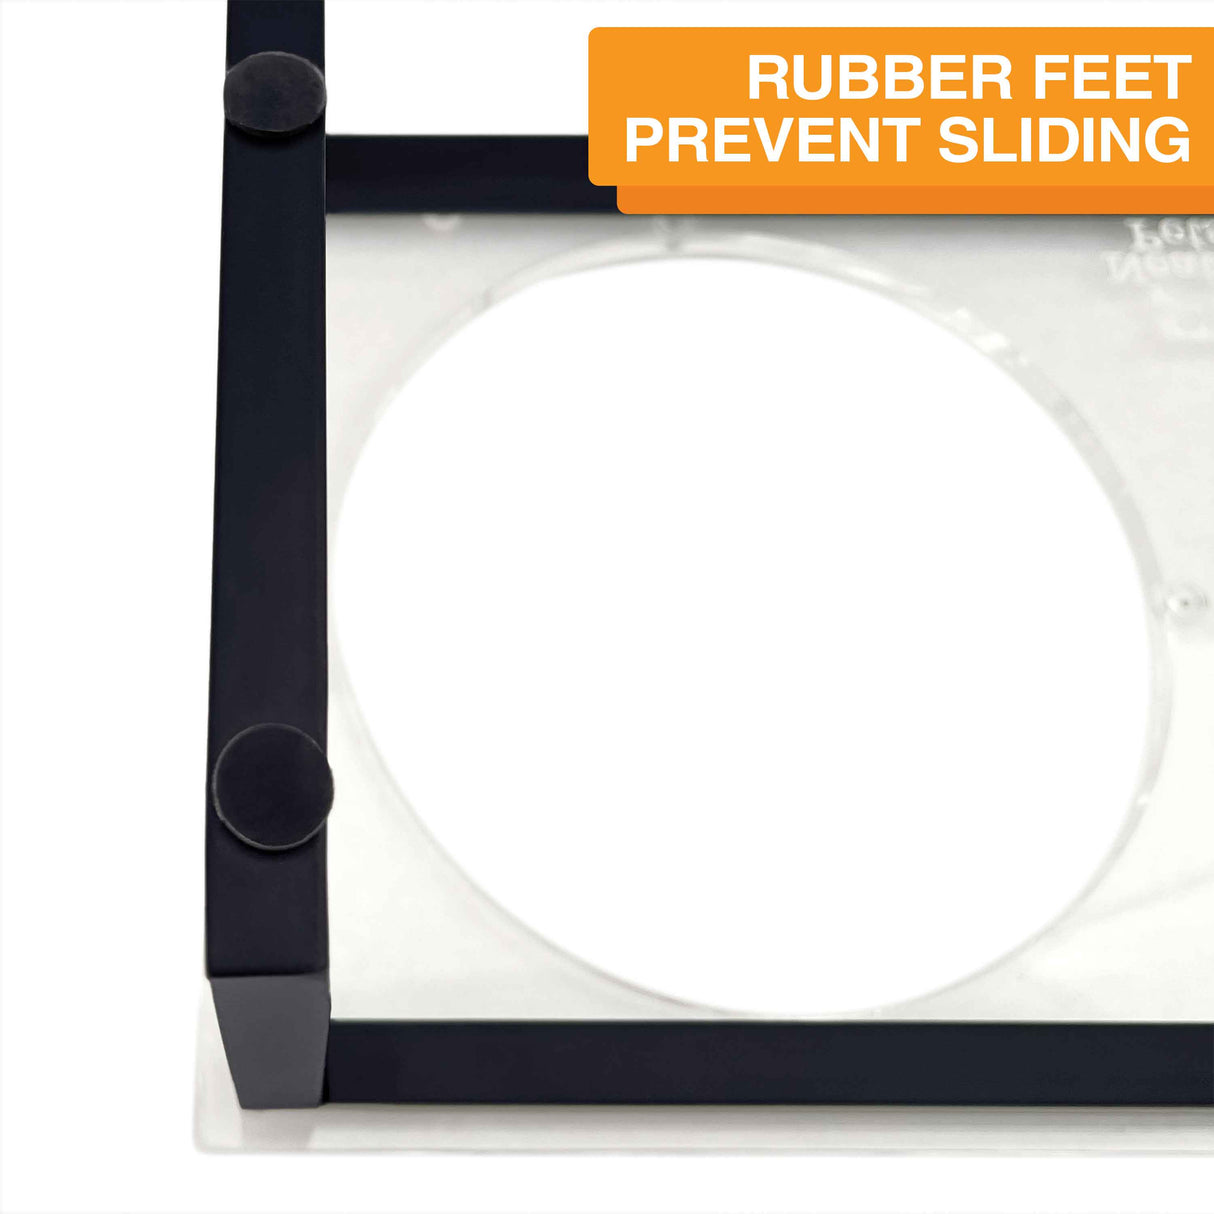 Rubber feet prevent sliding